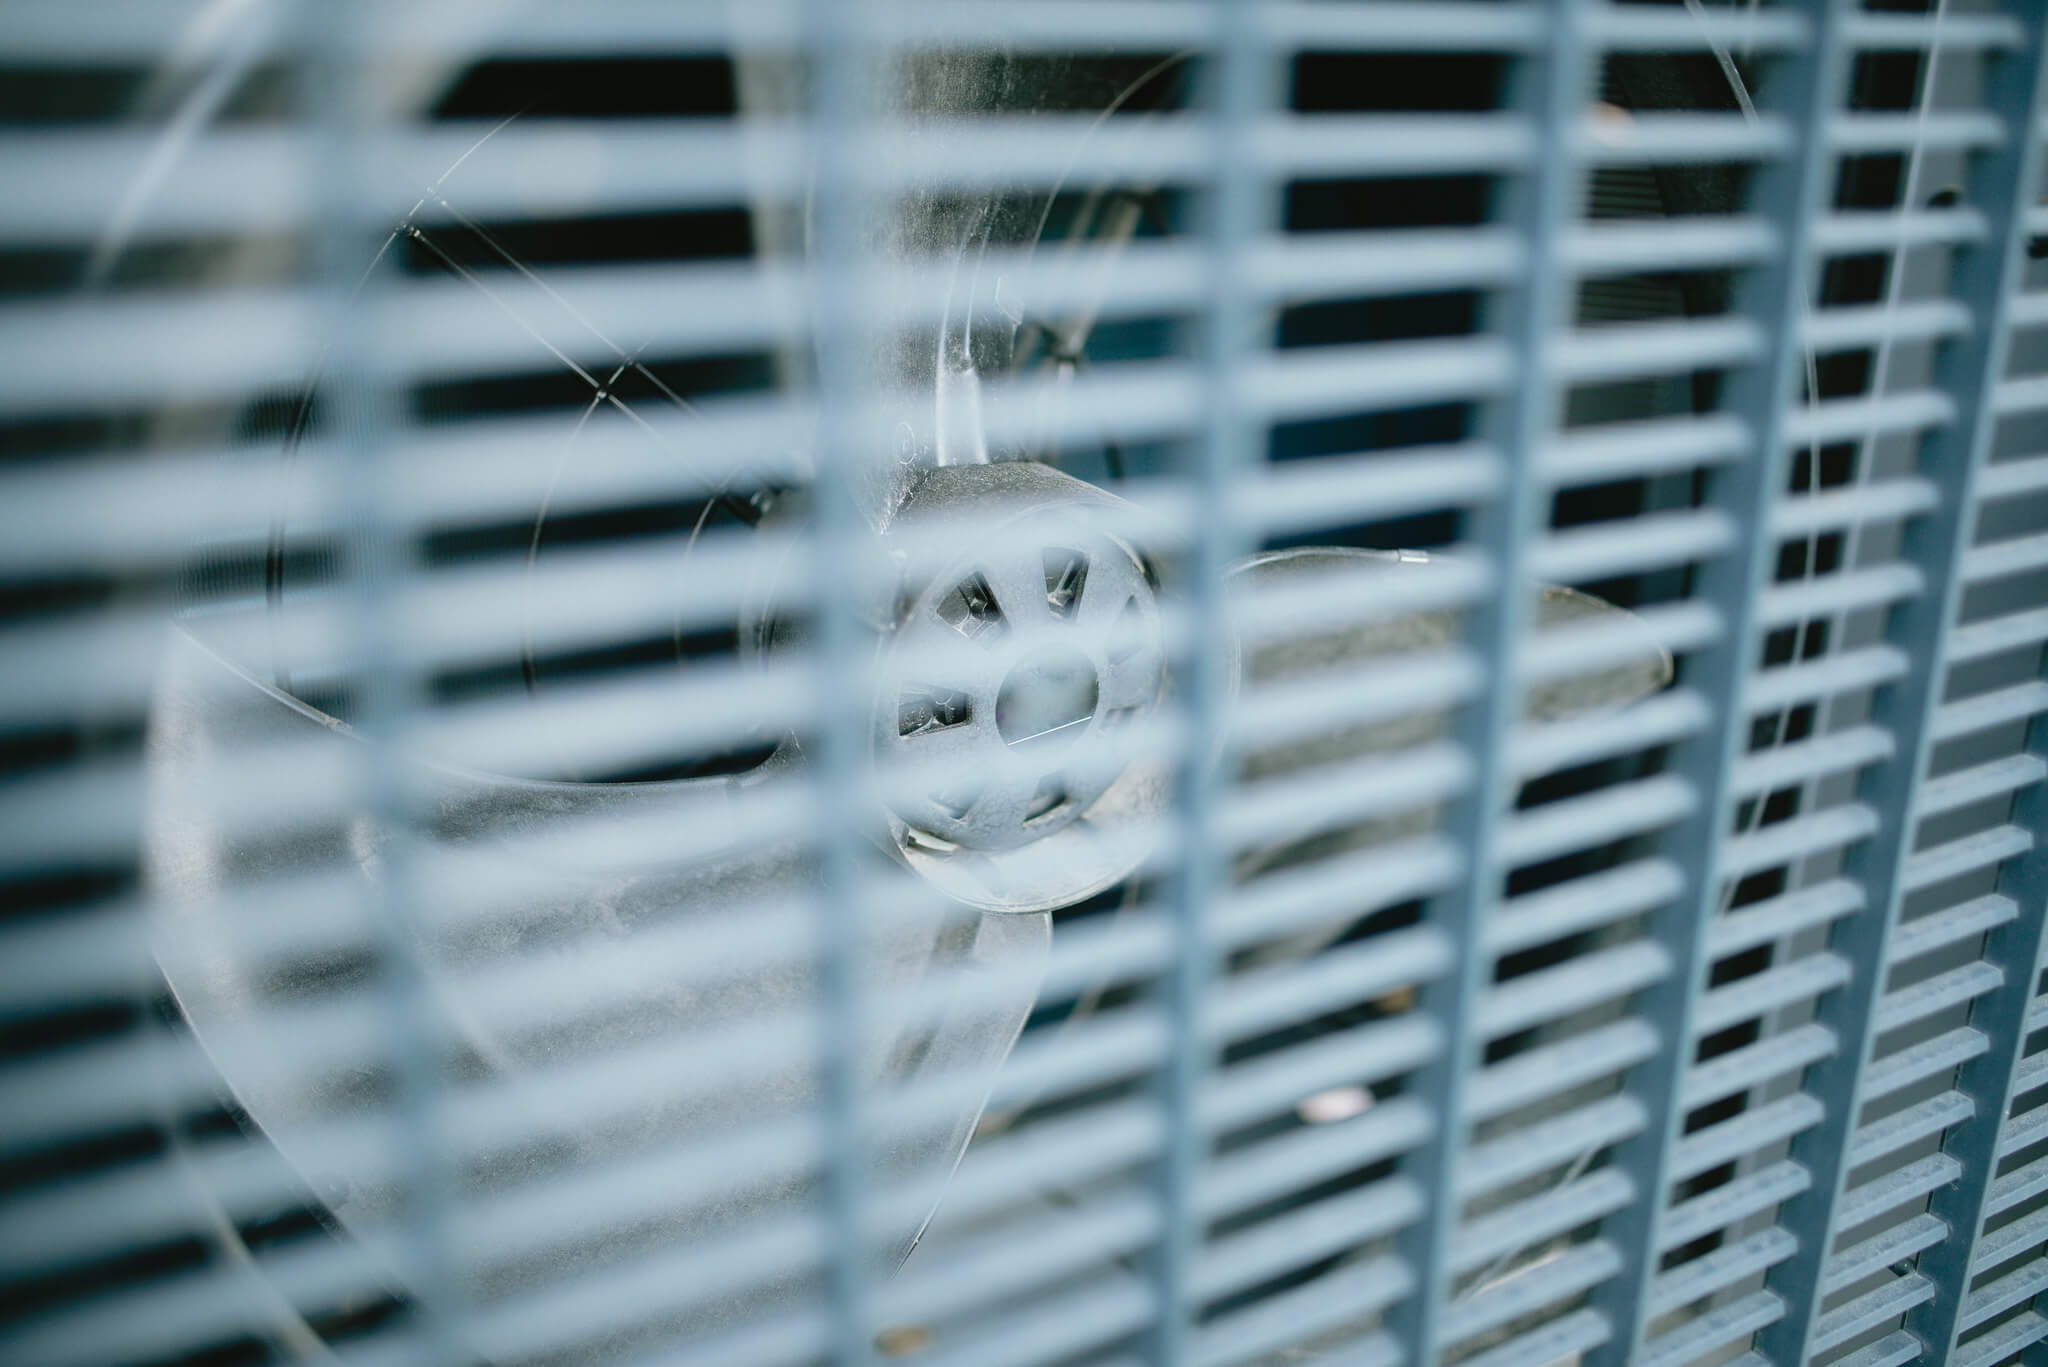 Větrák tepelného čerpadla (foto Nenad Stojkovic / CC BY 2.0)